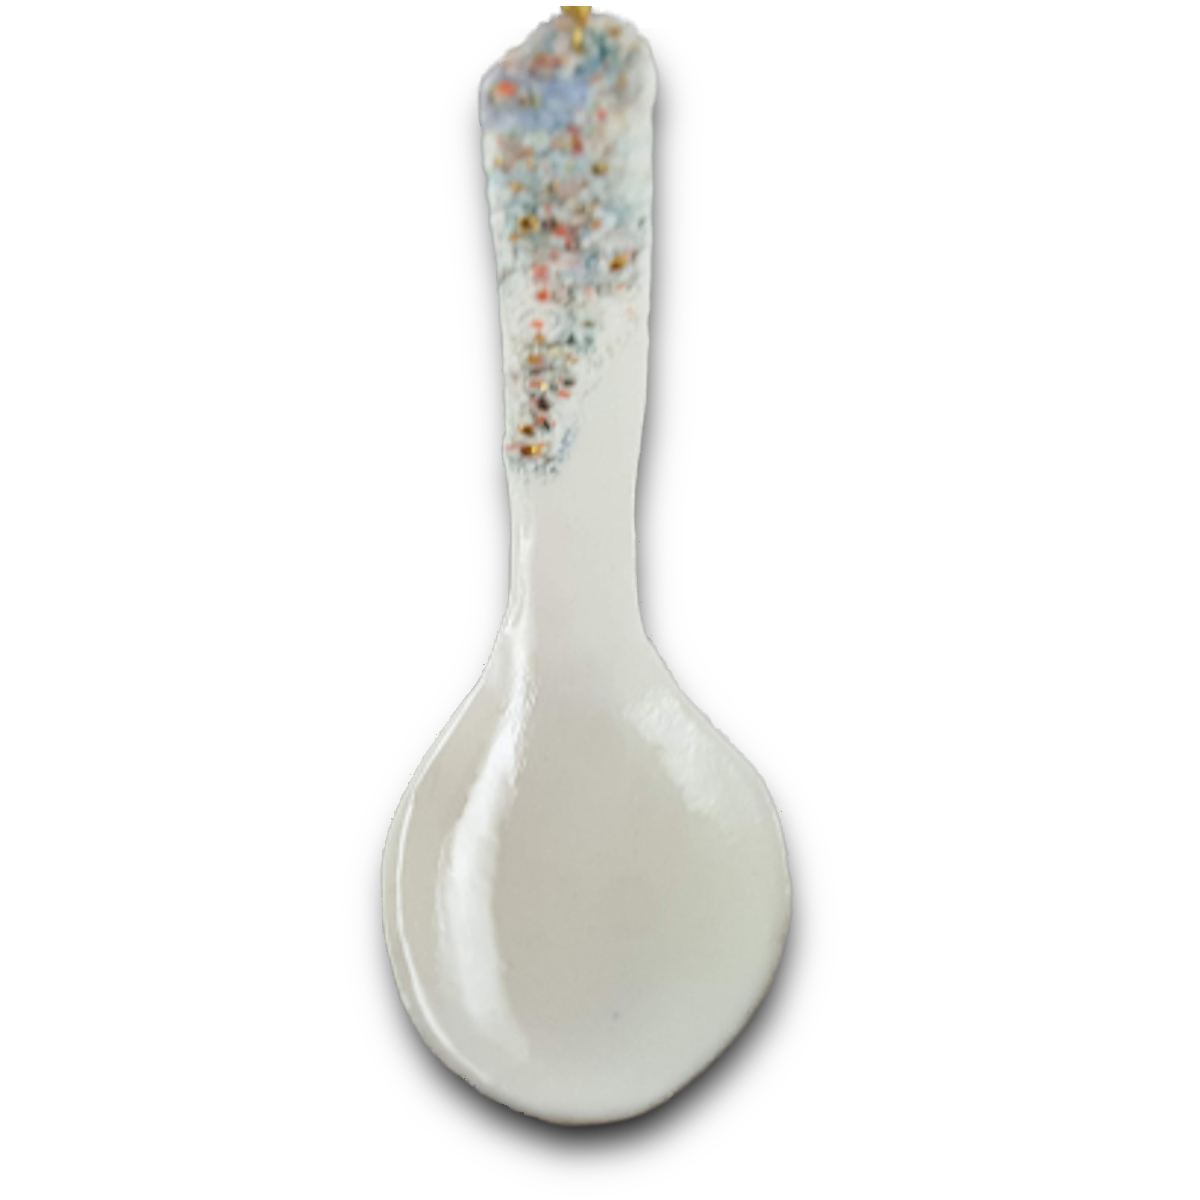 Decorative Porcelain Spoon